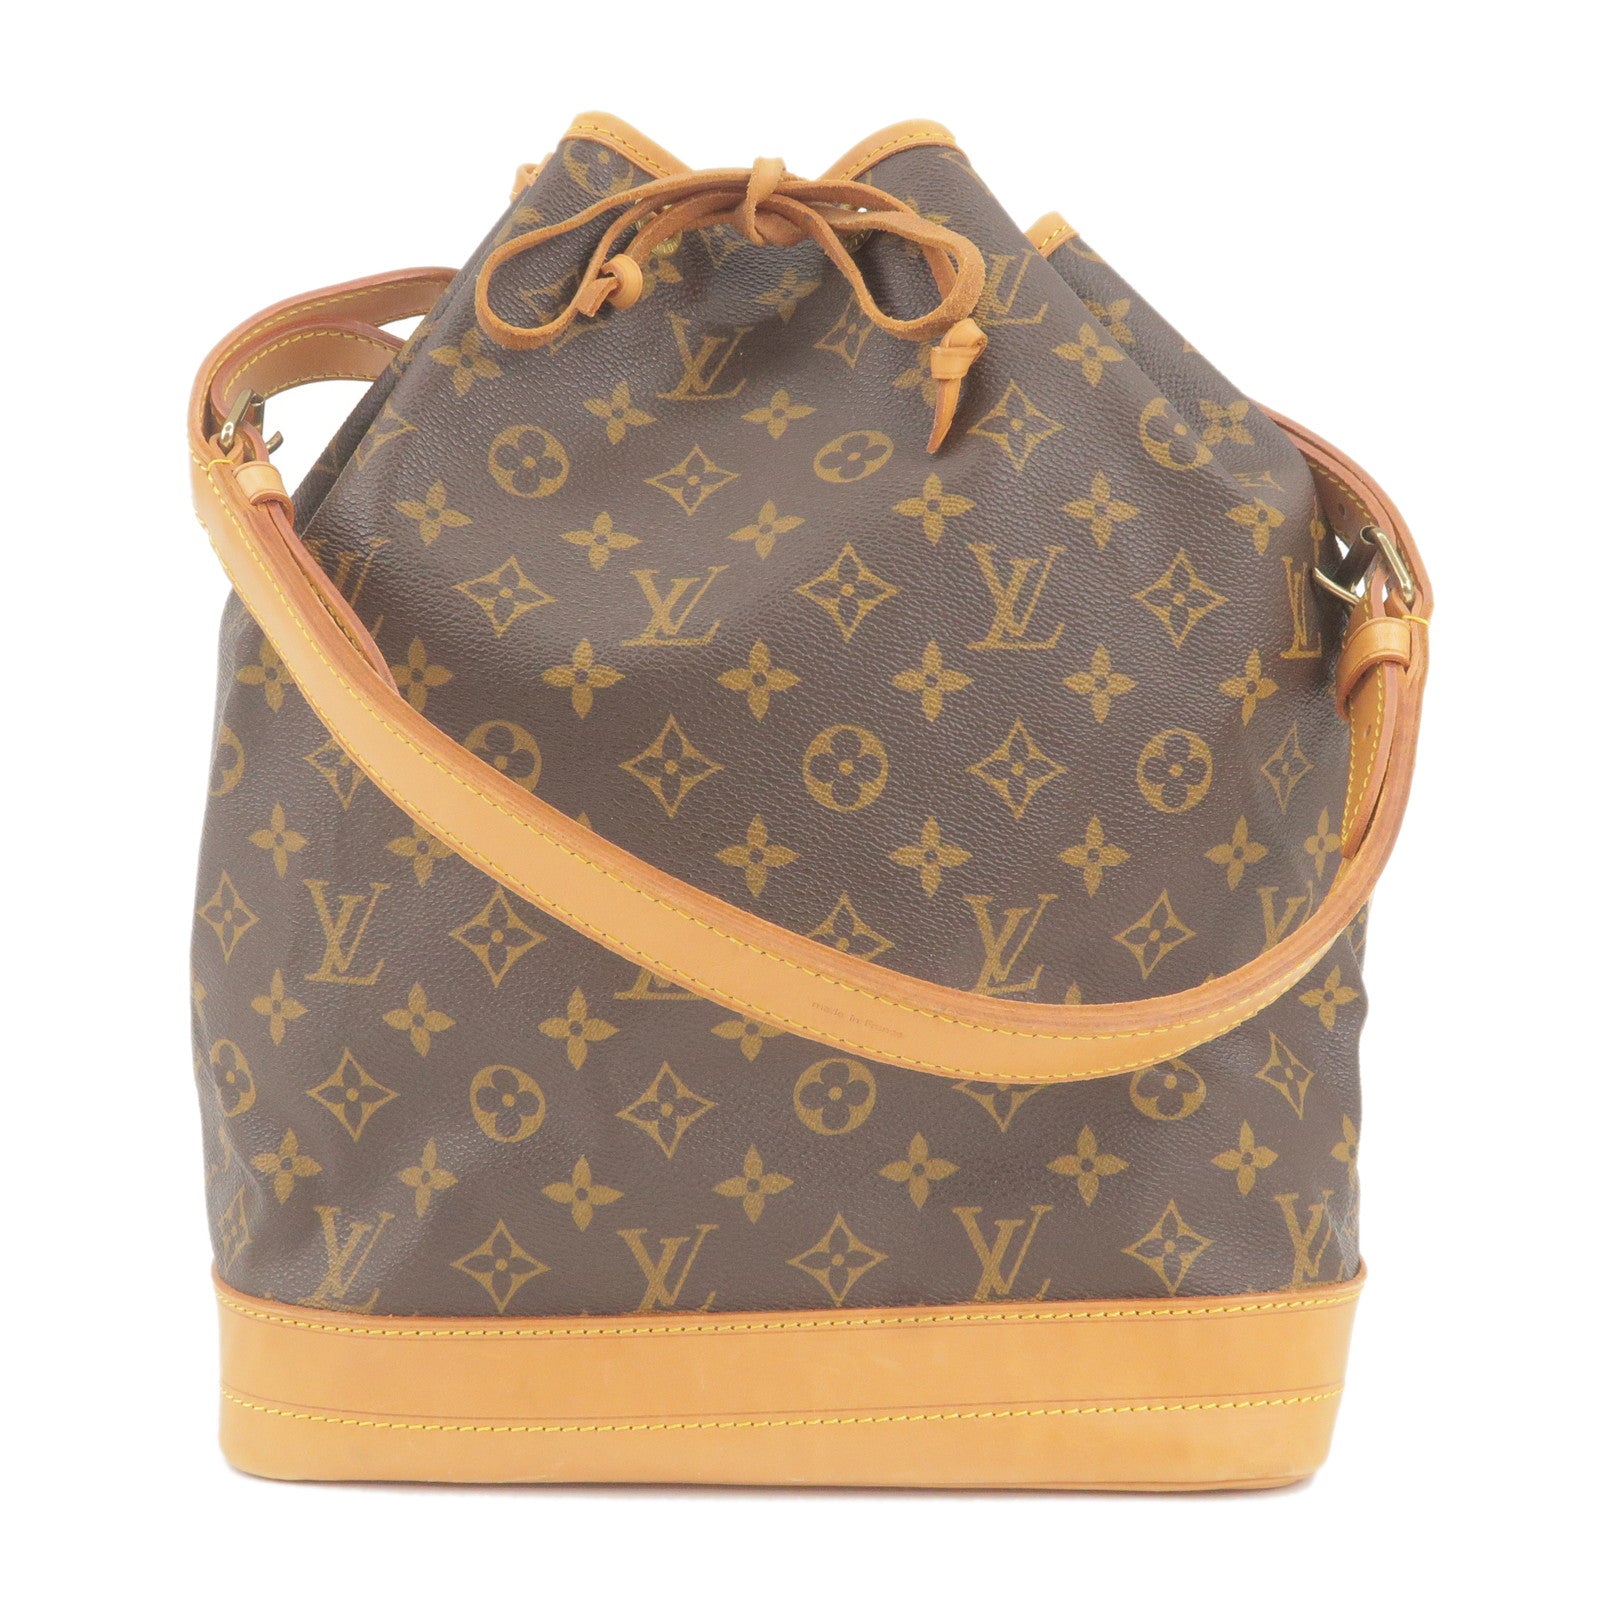 Louis Vuitton Summer Bag 2020